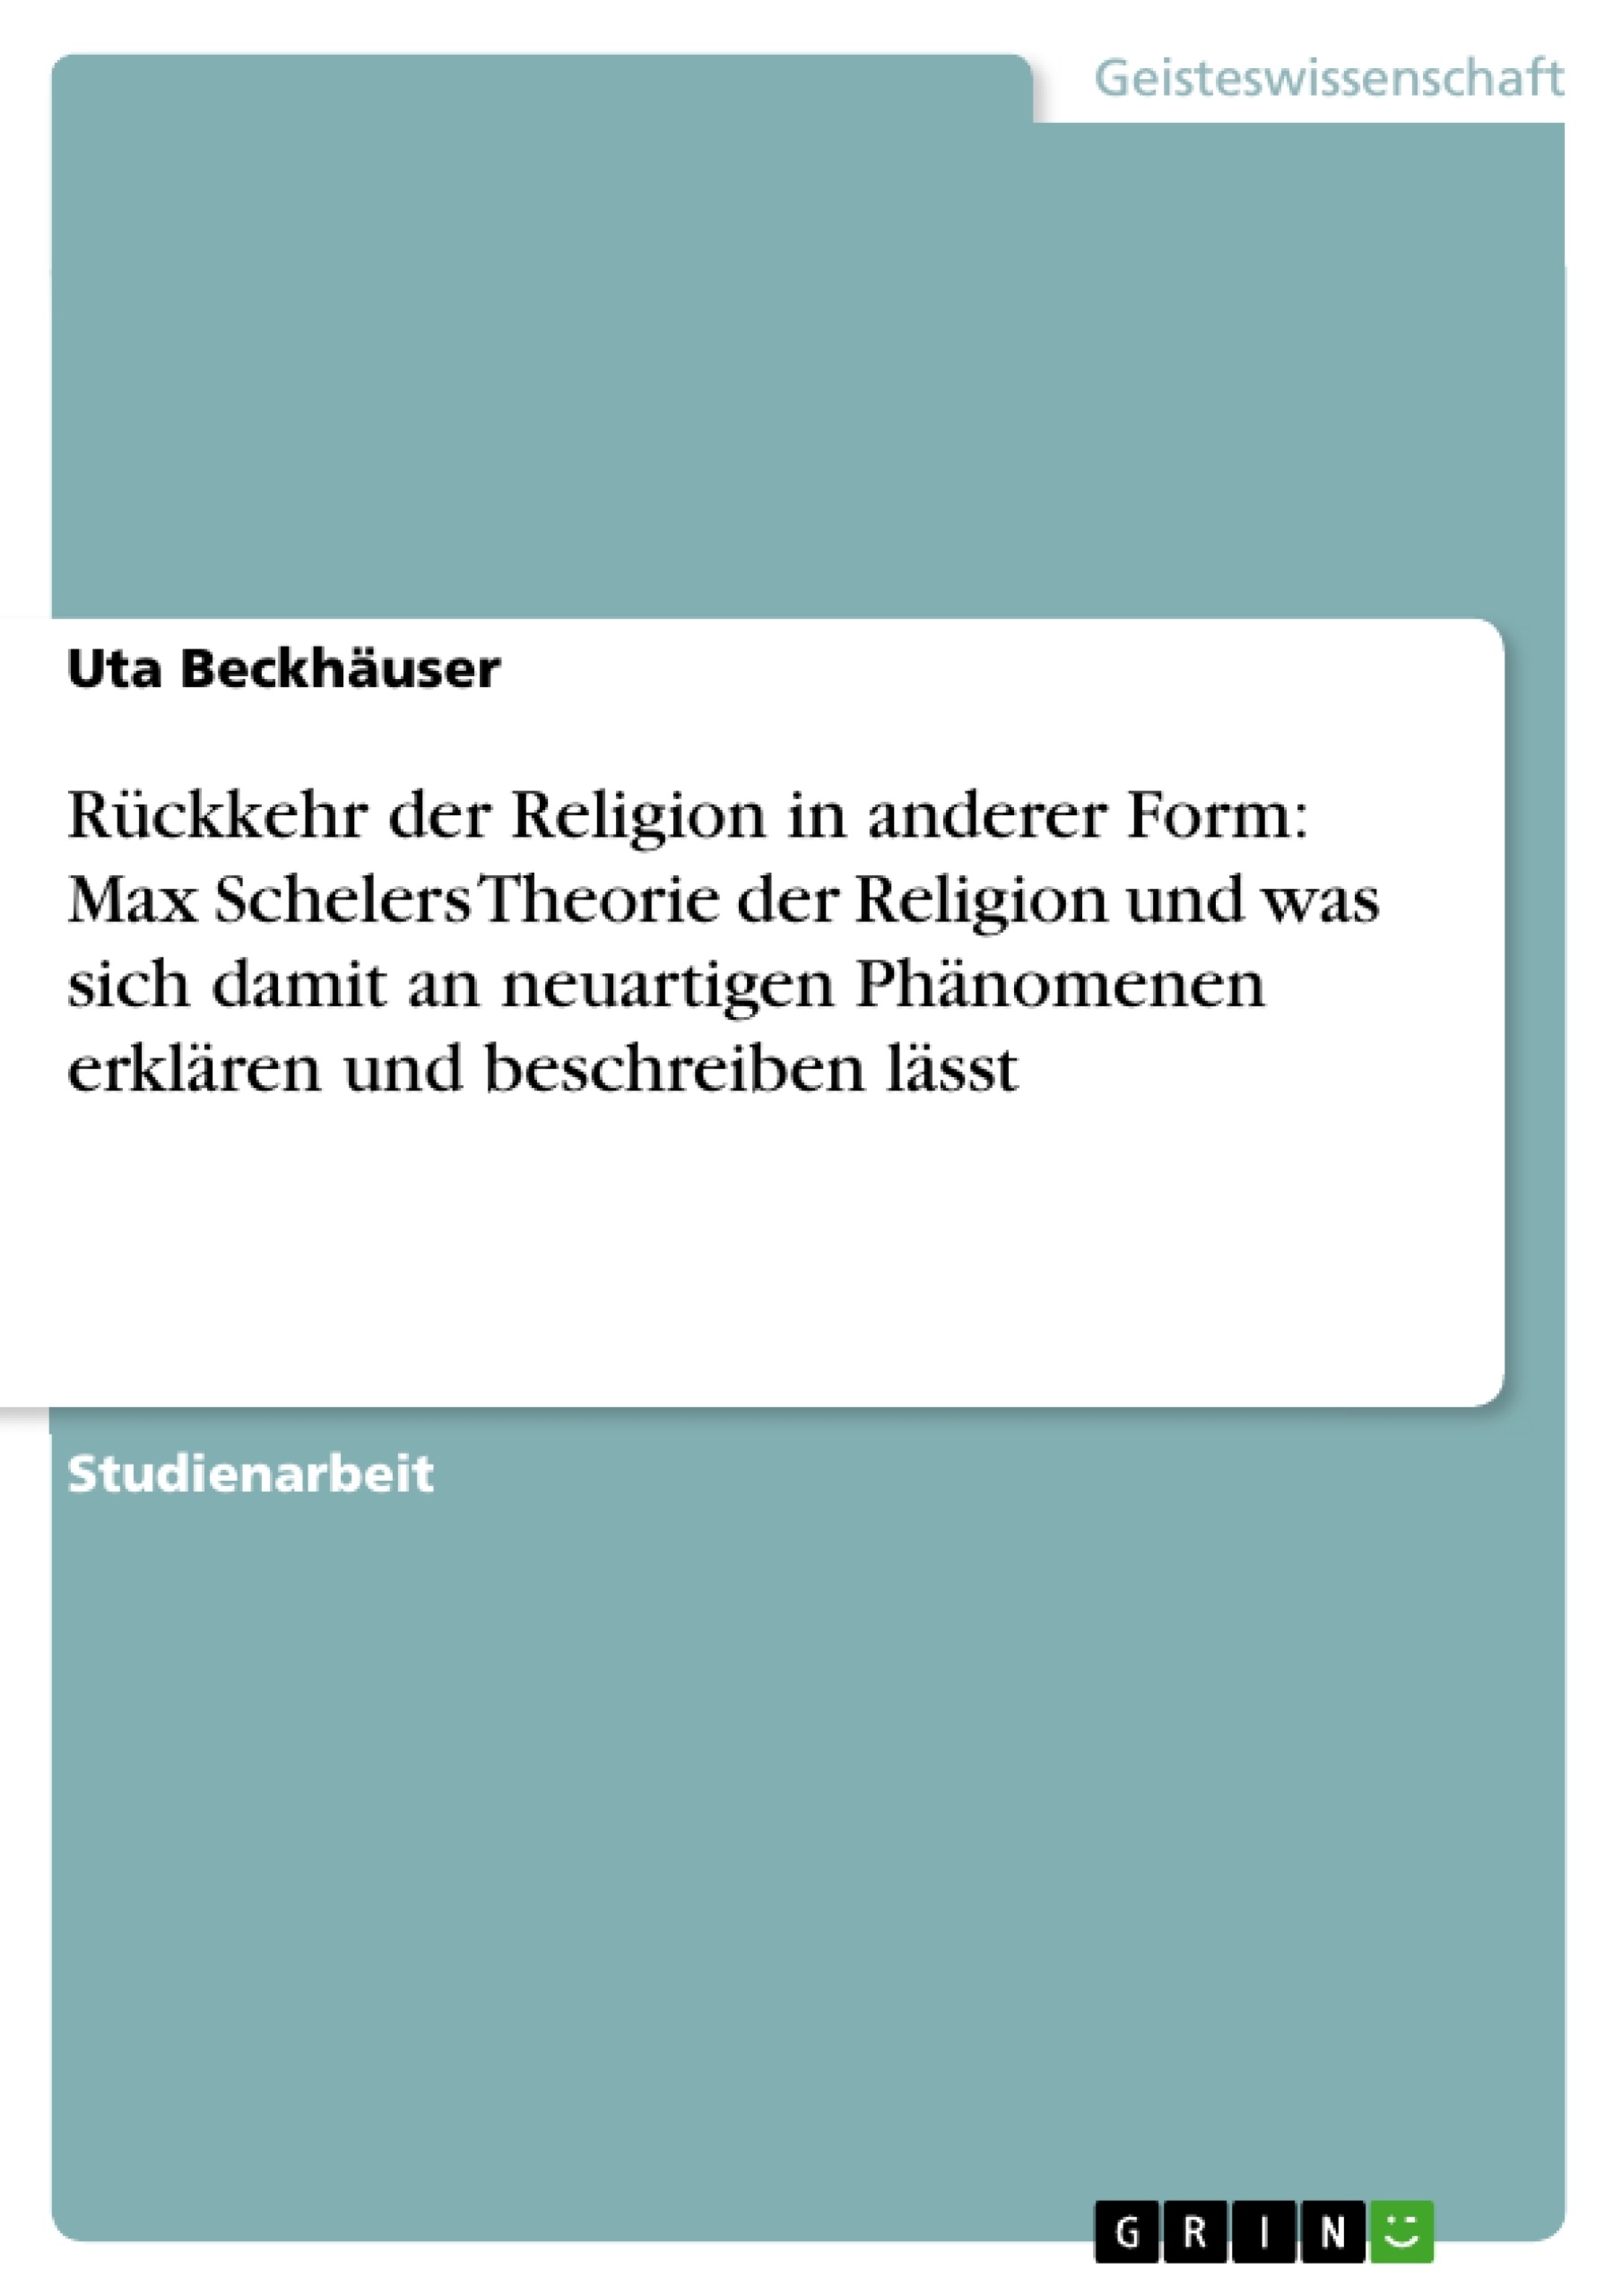 Título: Rückkehr der Religion in anderer Form: Max Schelers Theorie der Religion und was sich damit an neuartigen Phänomenen erklären und beschreiben lässt